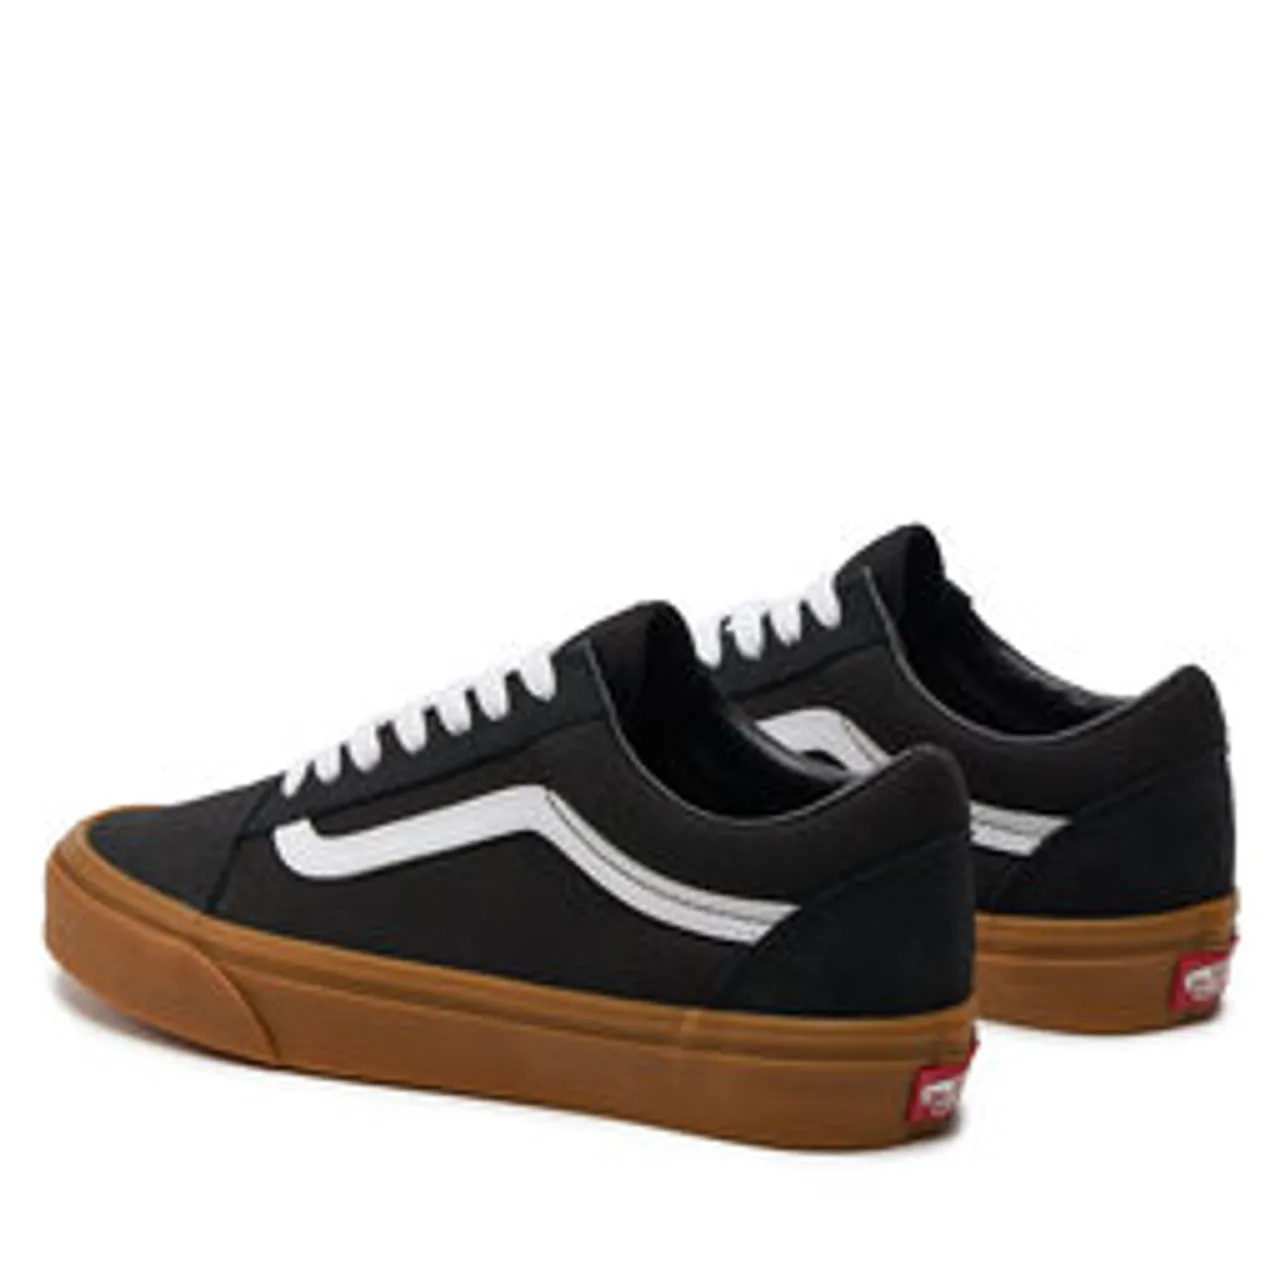 Sneakers aus Stoff Vans Old Skool VN000CR5B9M1 Black/Gum